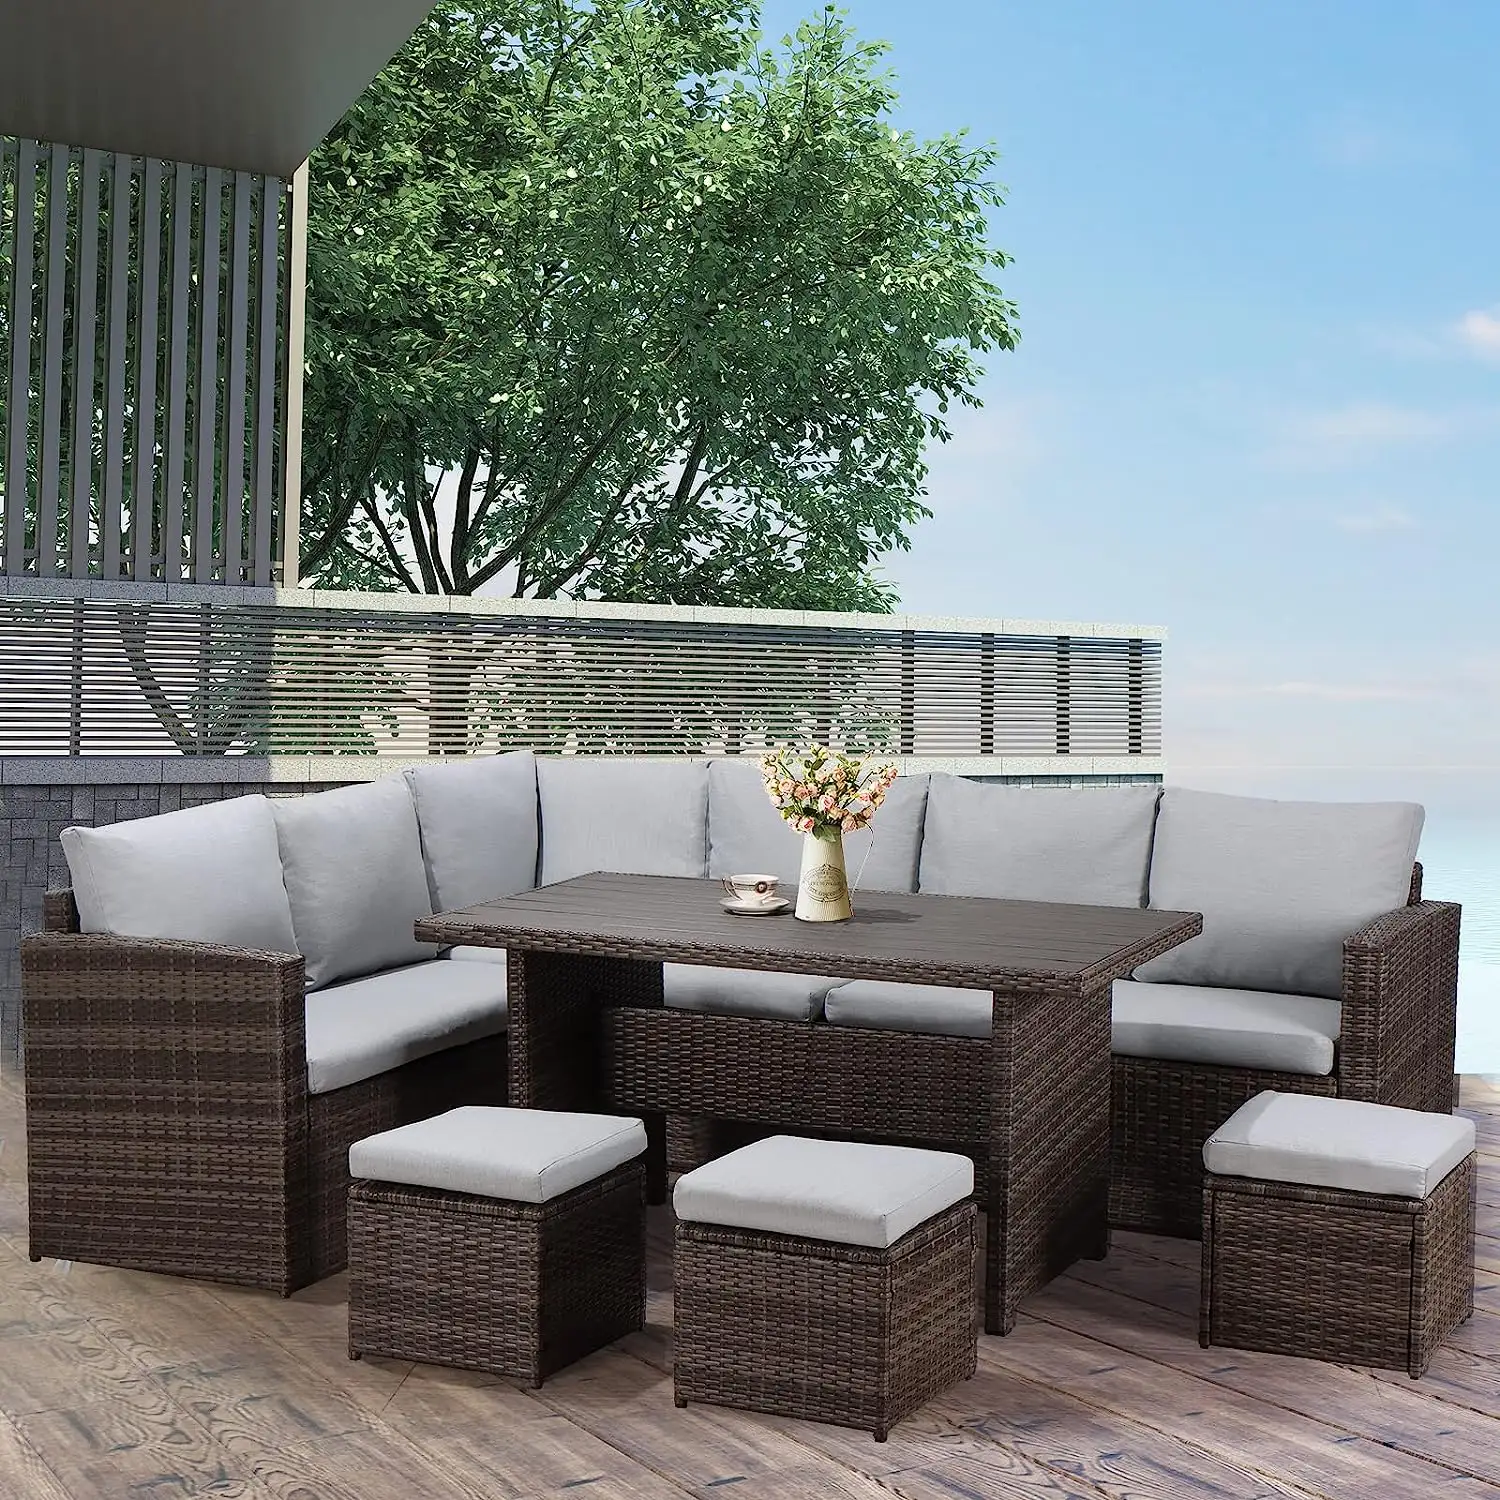 Bahçe Rattan hasır mobilya açık salon seti Rattan açık sandalyeler ve yüksekliği ayarlanabilir masa ile kanepeler